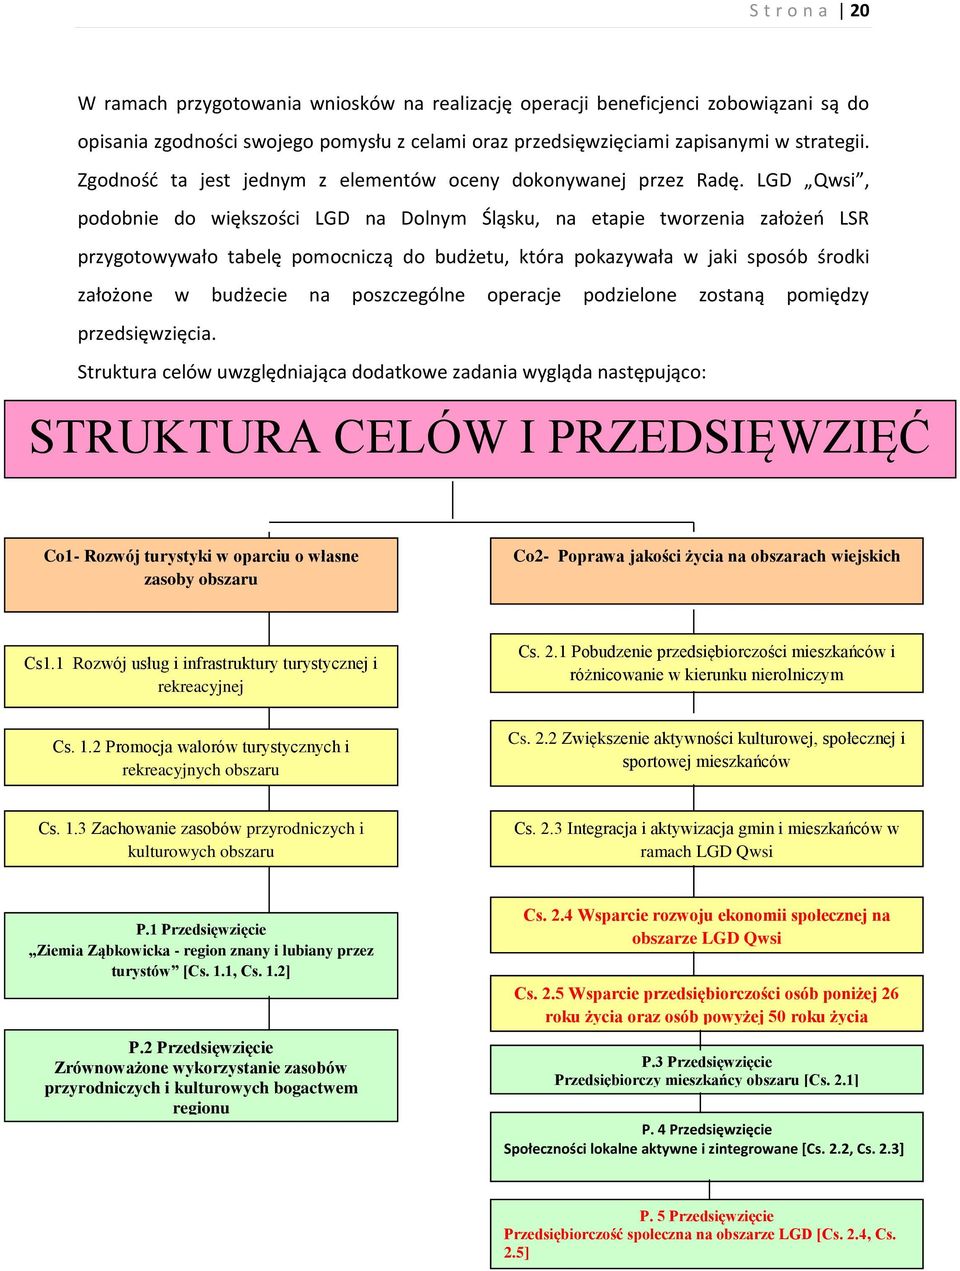 LGD Qwsi, podobnie do większości LGD na Dolnym Śląsku, na etapie tworzenia założeń LSR przygotowywało tabelę pomocniczą do budżetu, która pokazywała w jaki sposób środki założone w budżecie na